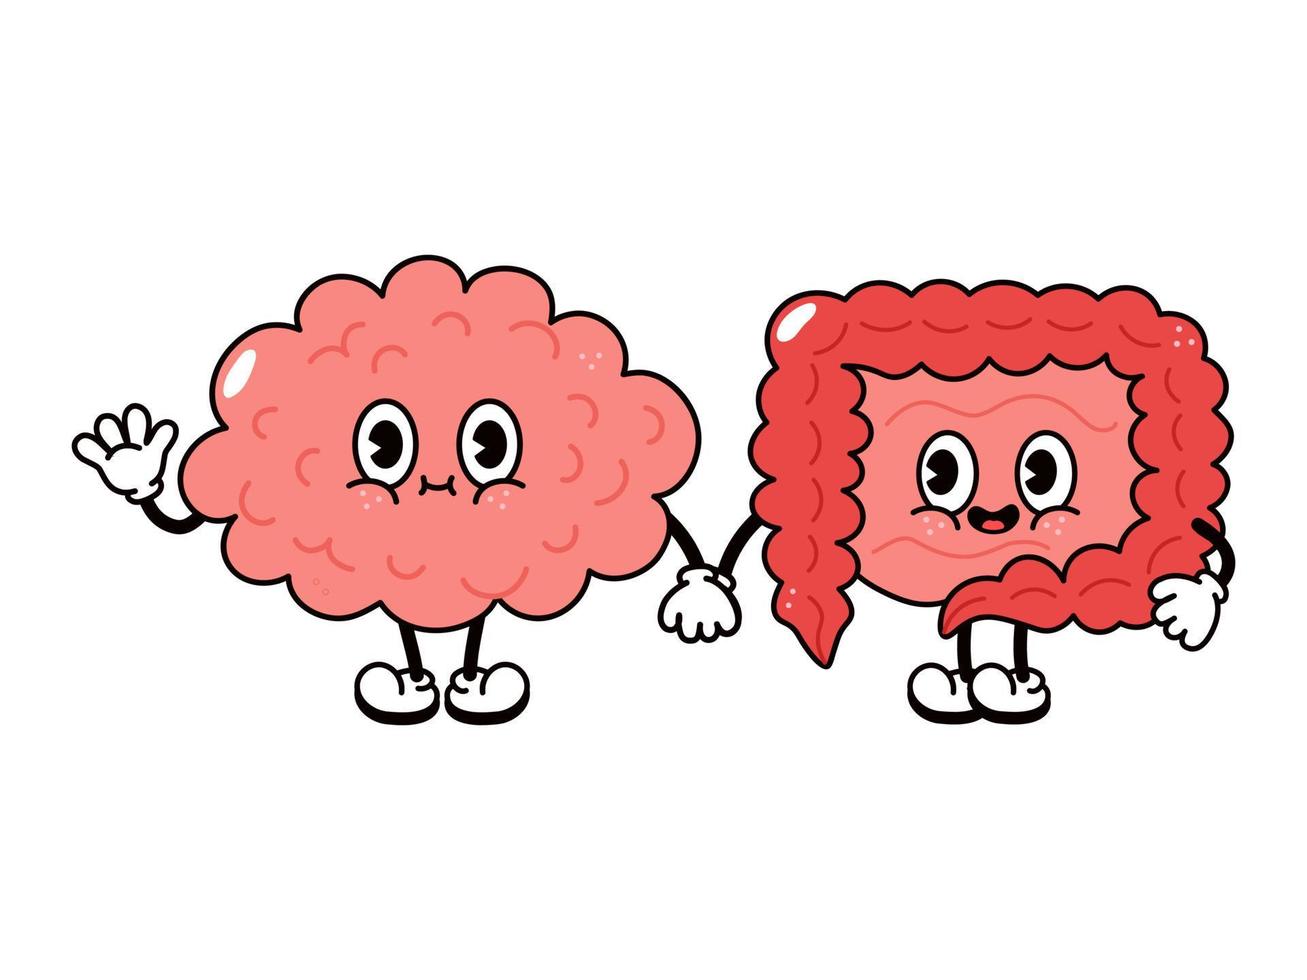 lindo, divertido y feliz personaje de cerebro e intestinos. personajes kawaii de dibujos animados dibujados a mano vectorial, icono de ilustración. divertido, caricatura, cerebro, y, intestinos, amigos, concepto vector